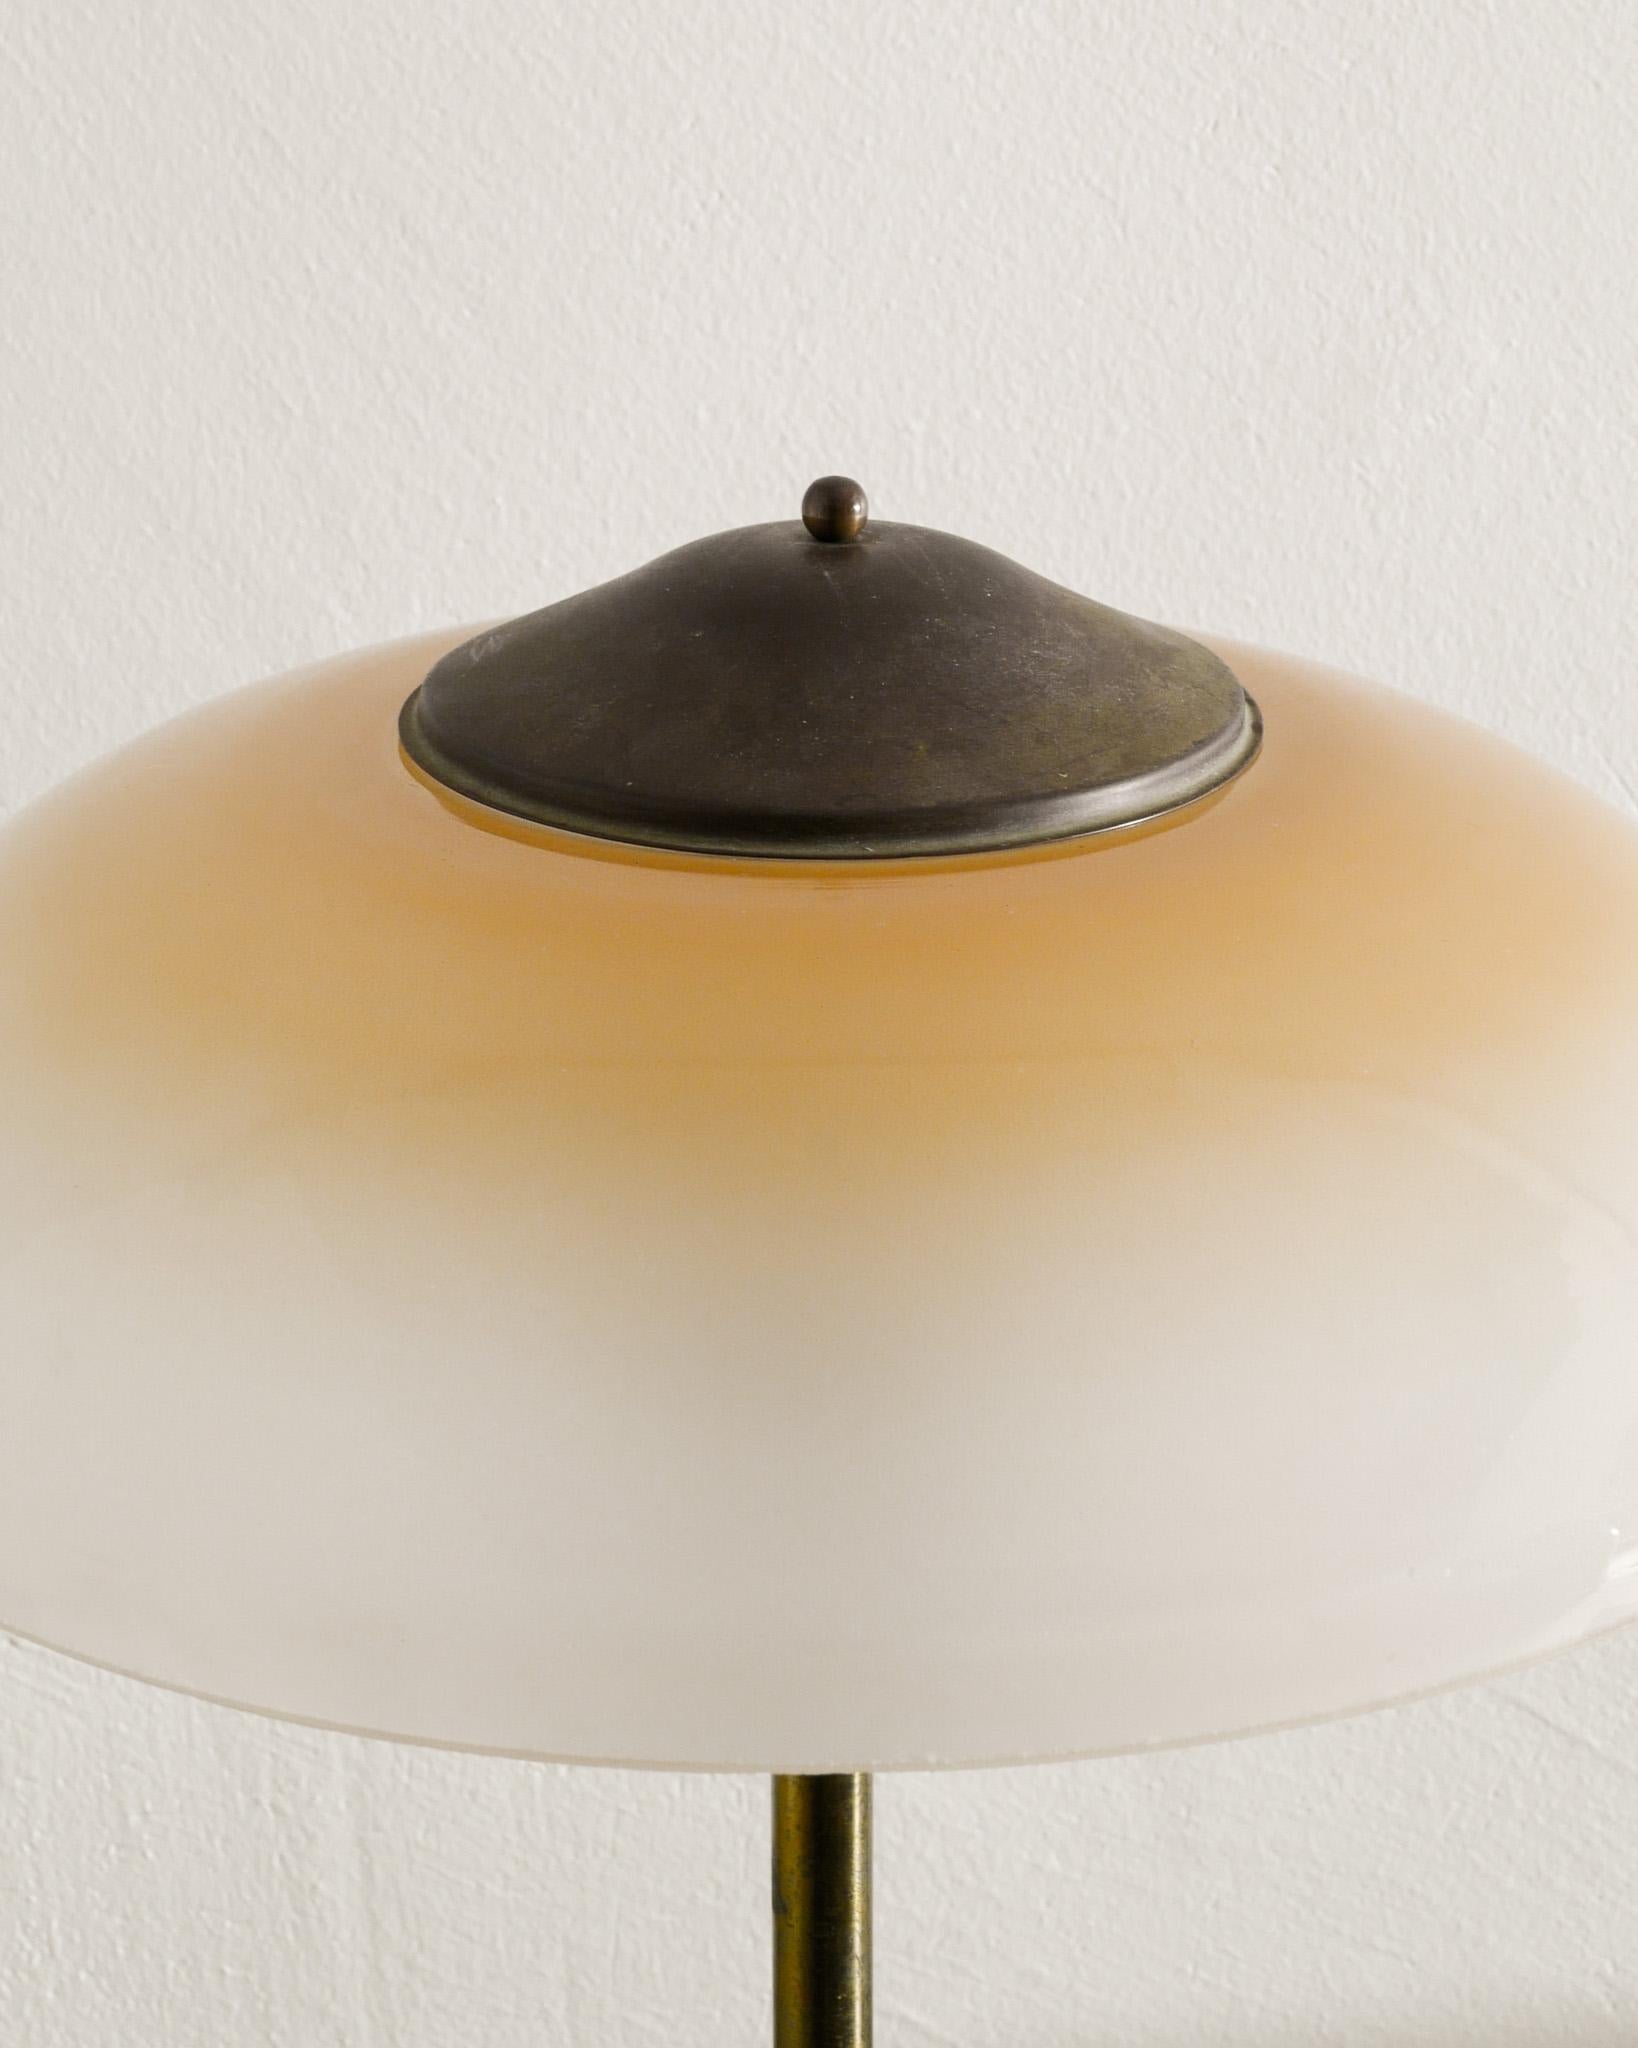 Danish Mid Century Table Desk Lamp in Brass & Glass by Fog & Mørup Denmark 1950s For Sale 2